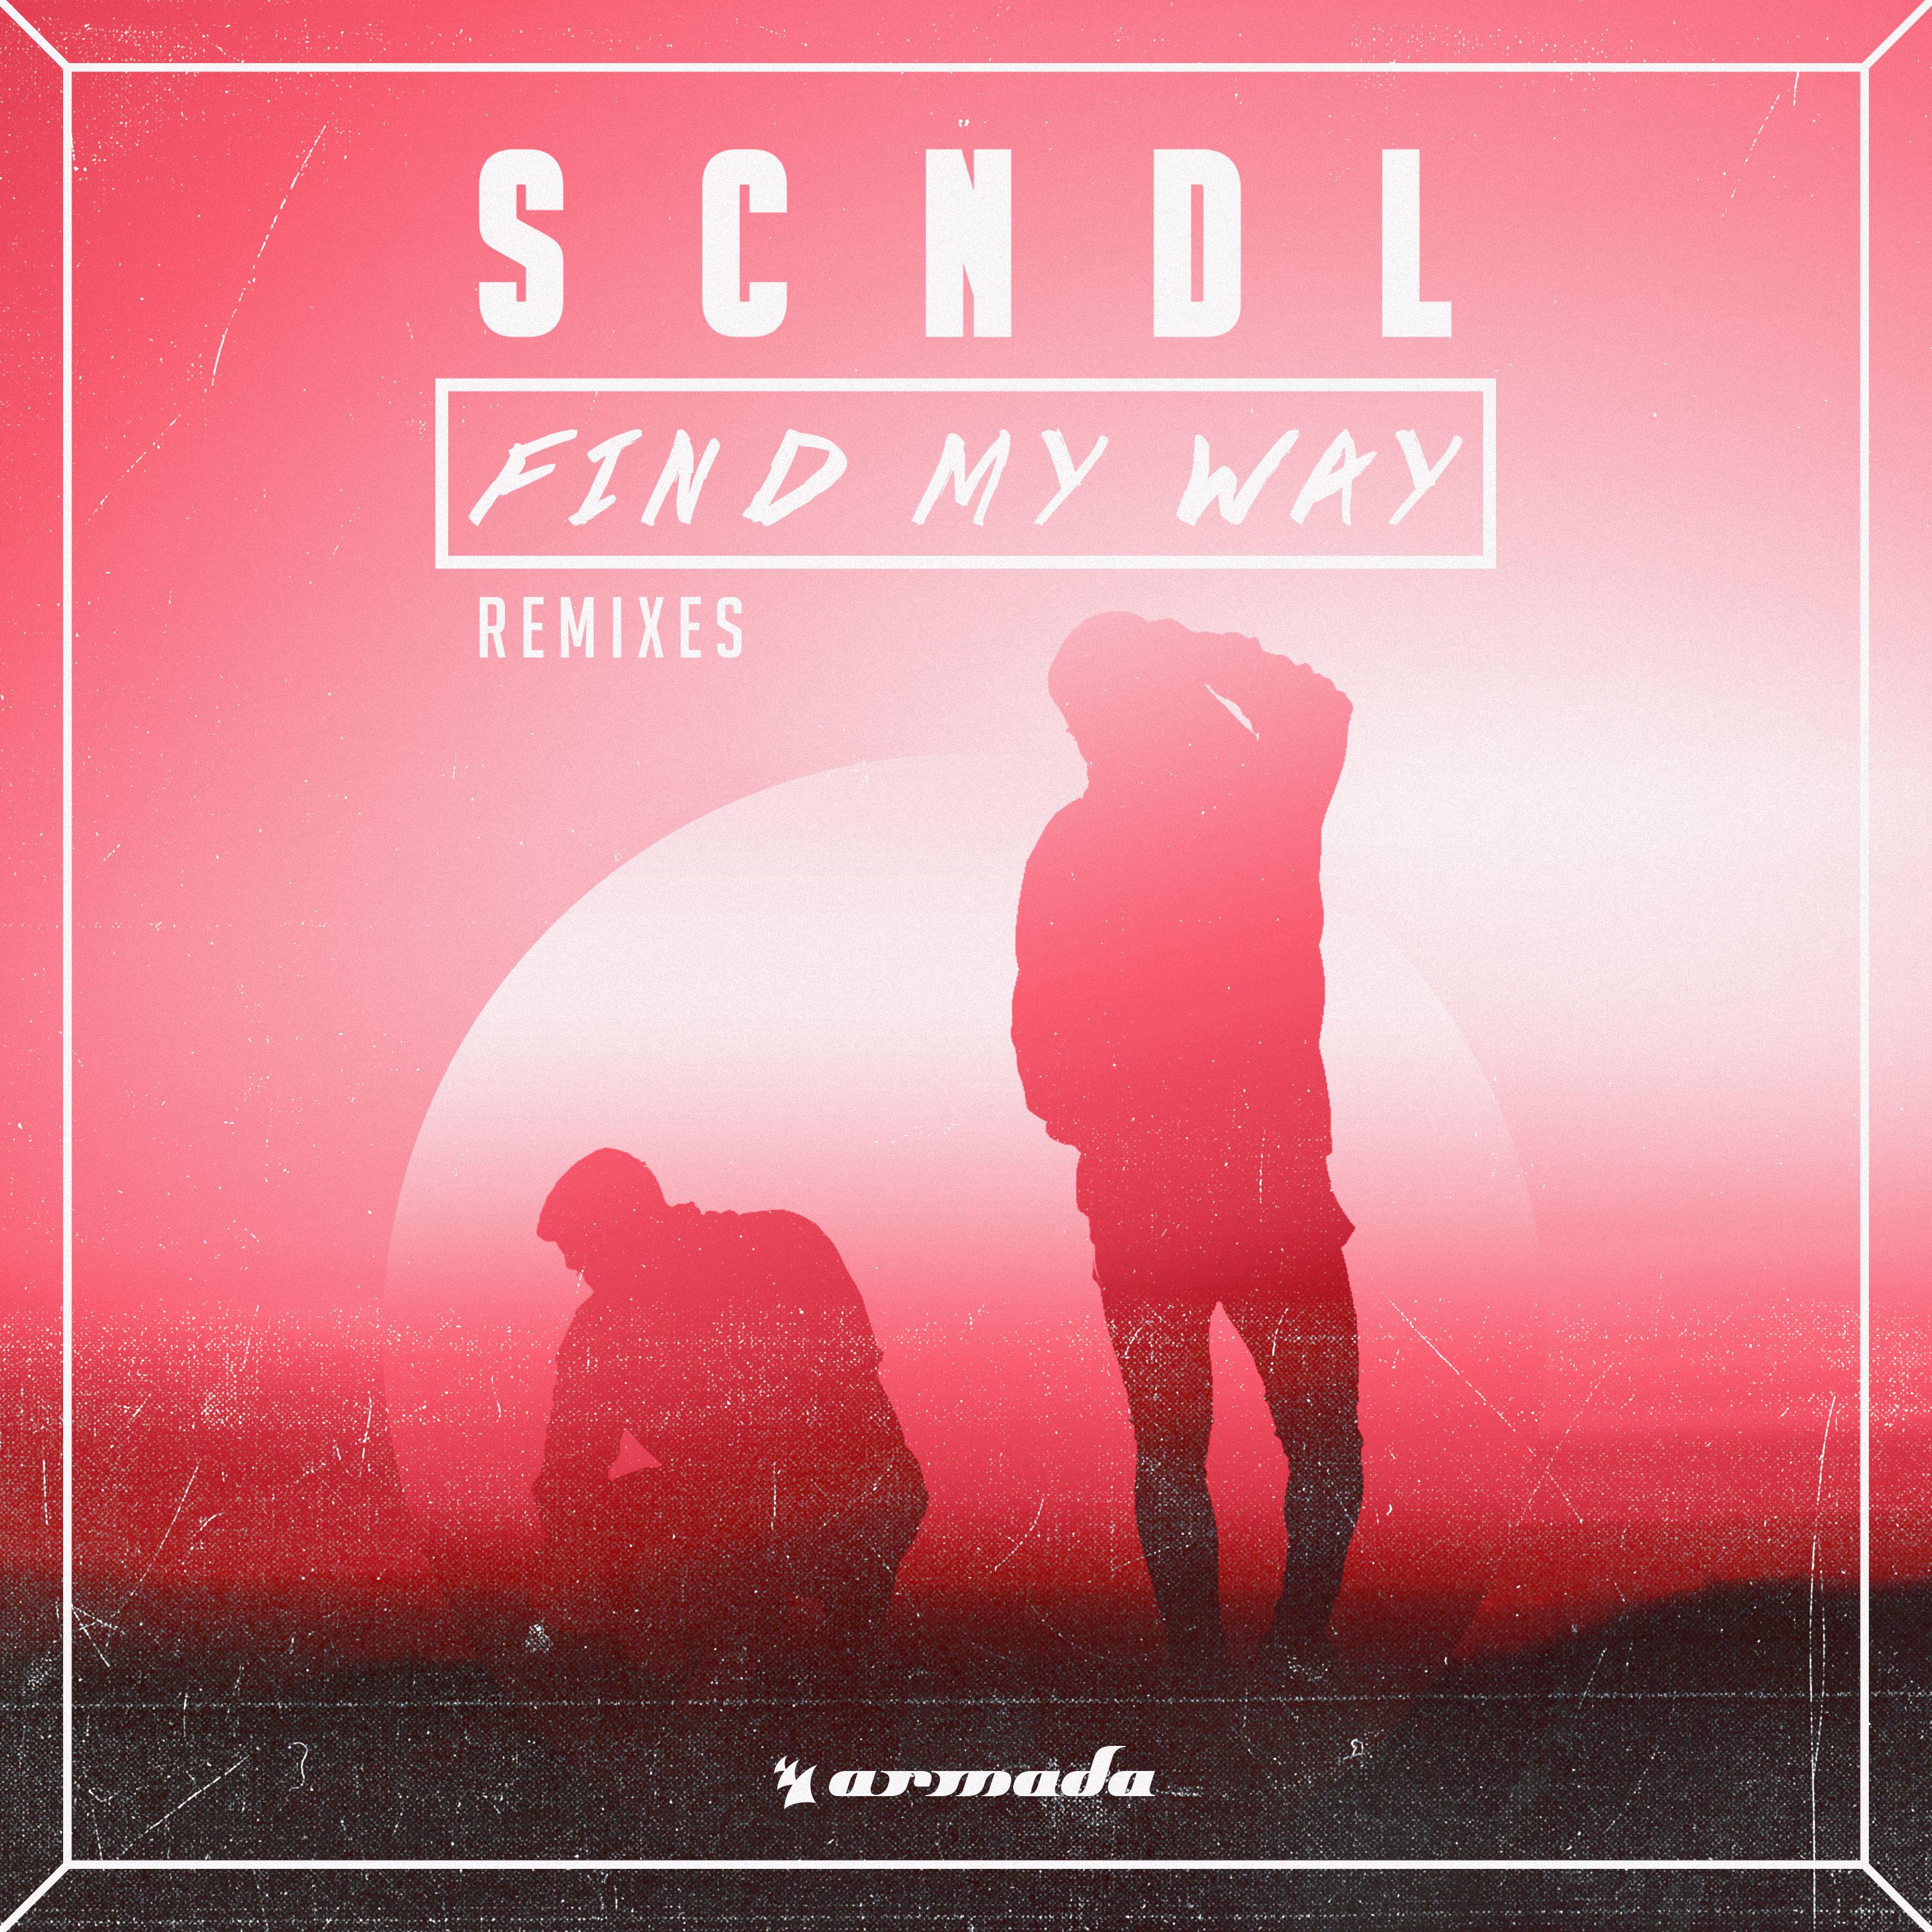 Find My Way (Remixes)